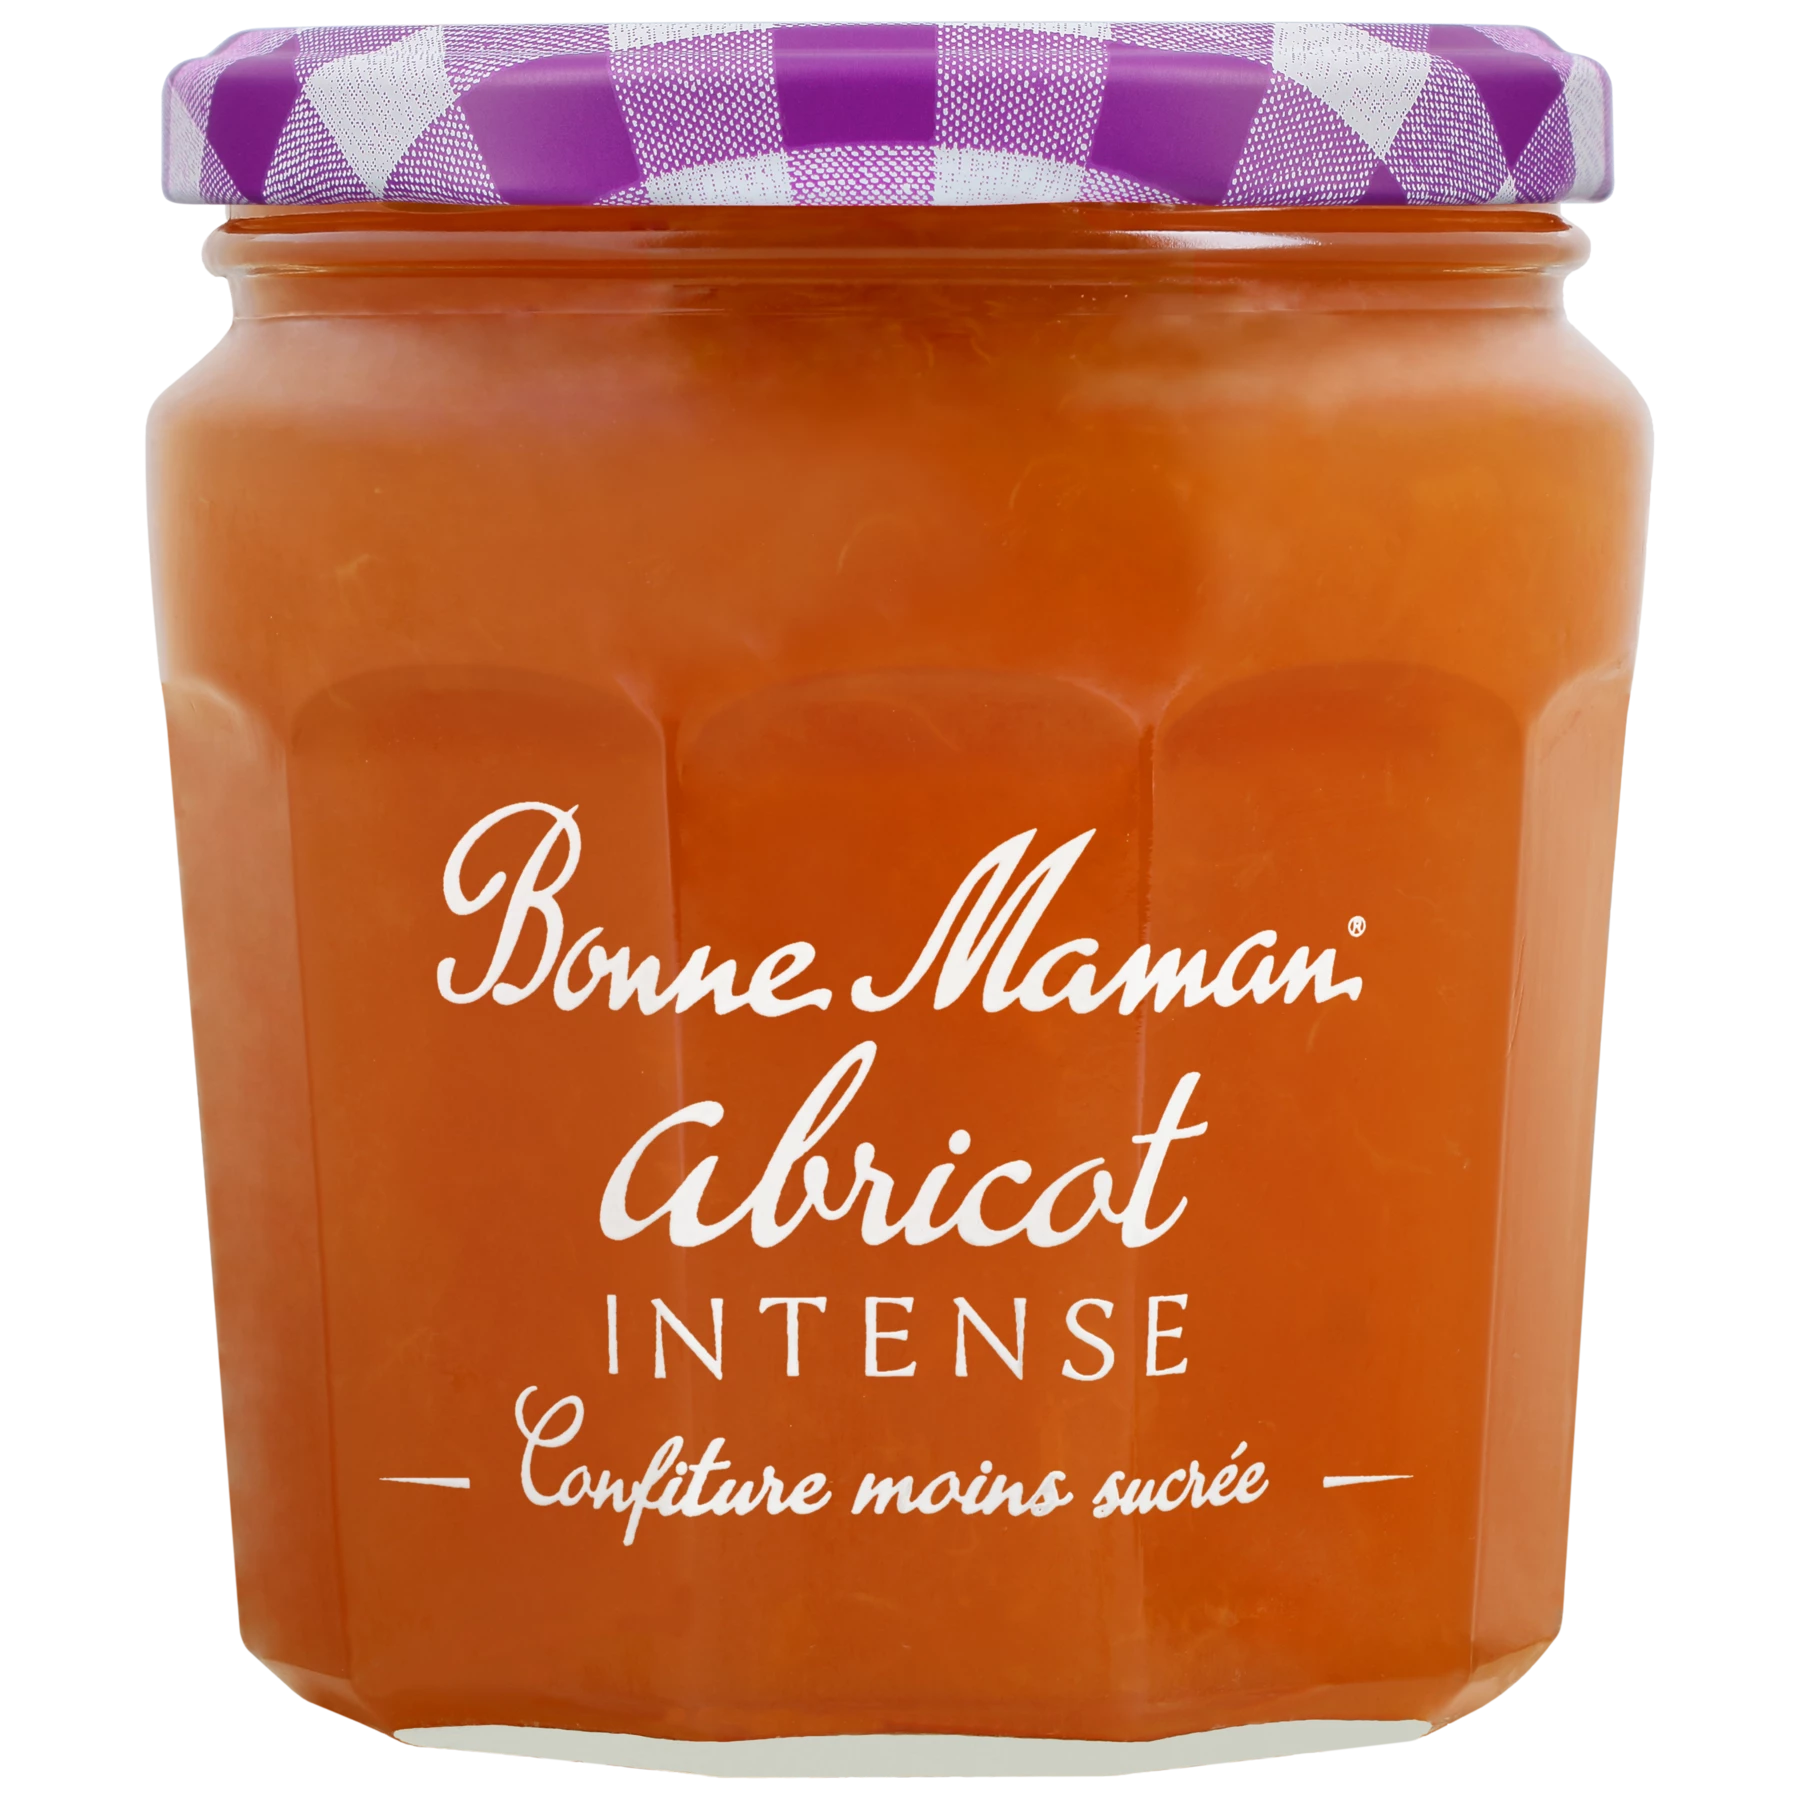 Насыщенное абрикосовое варенье 335г - BONNE MAMAN